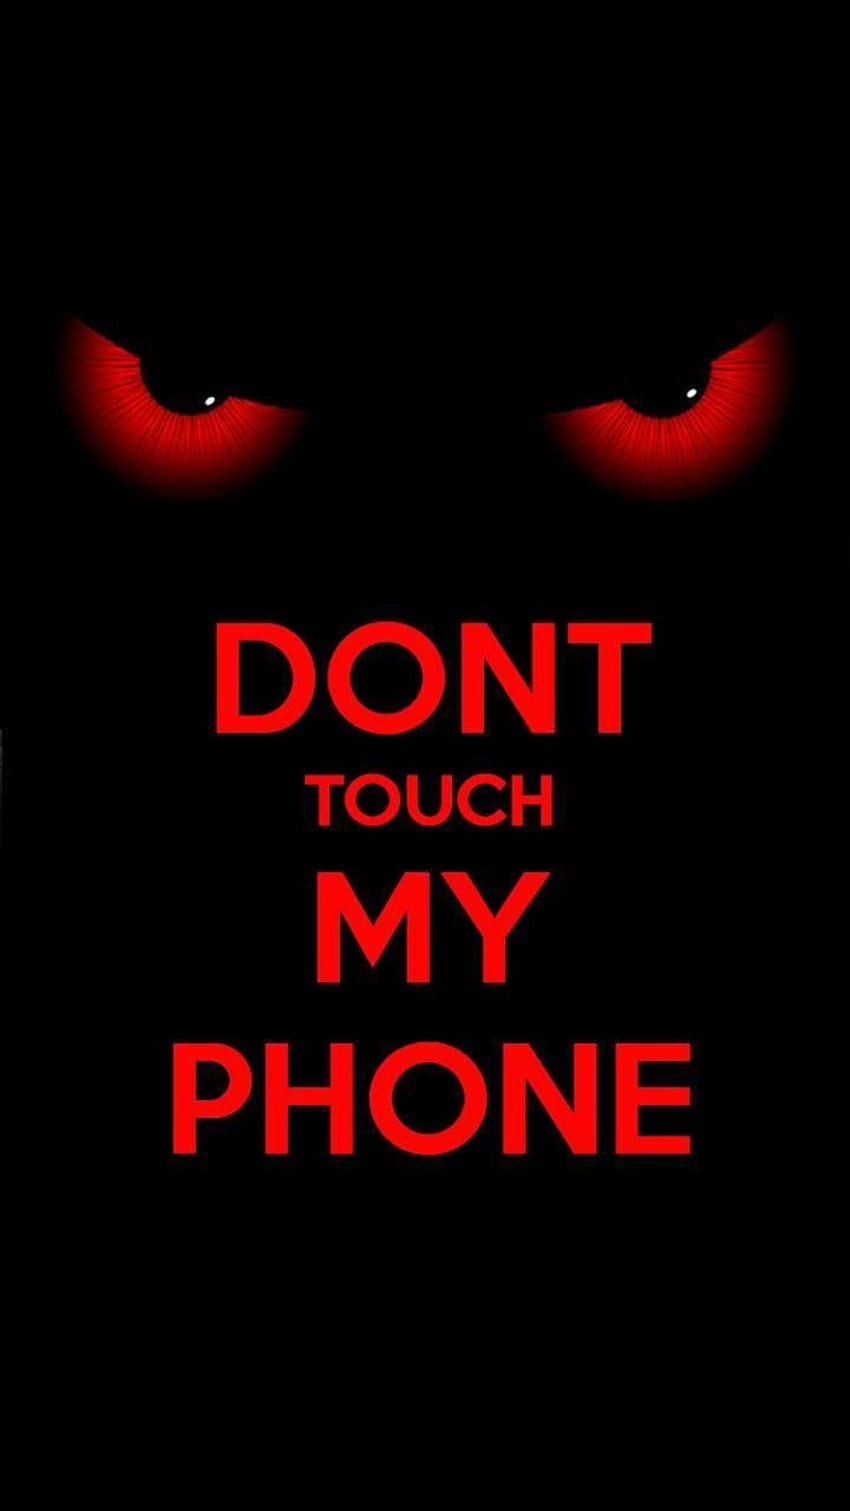 私の電話に触れないでください。 私に触れないでください、触れないでください HD電話の壁紙